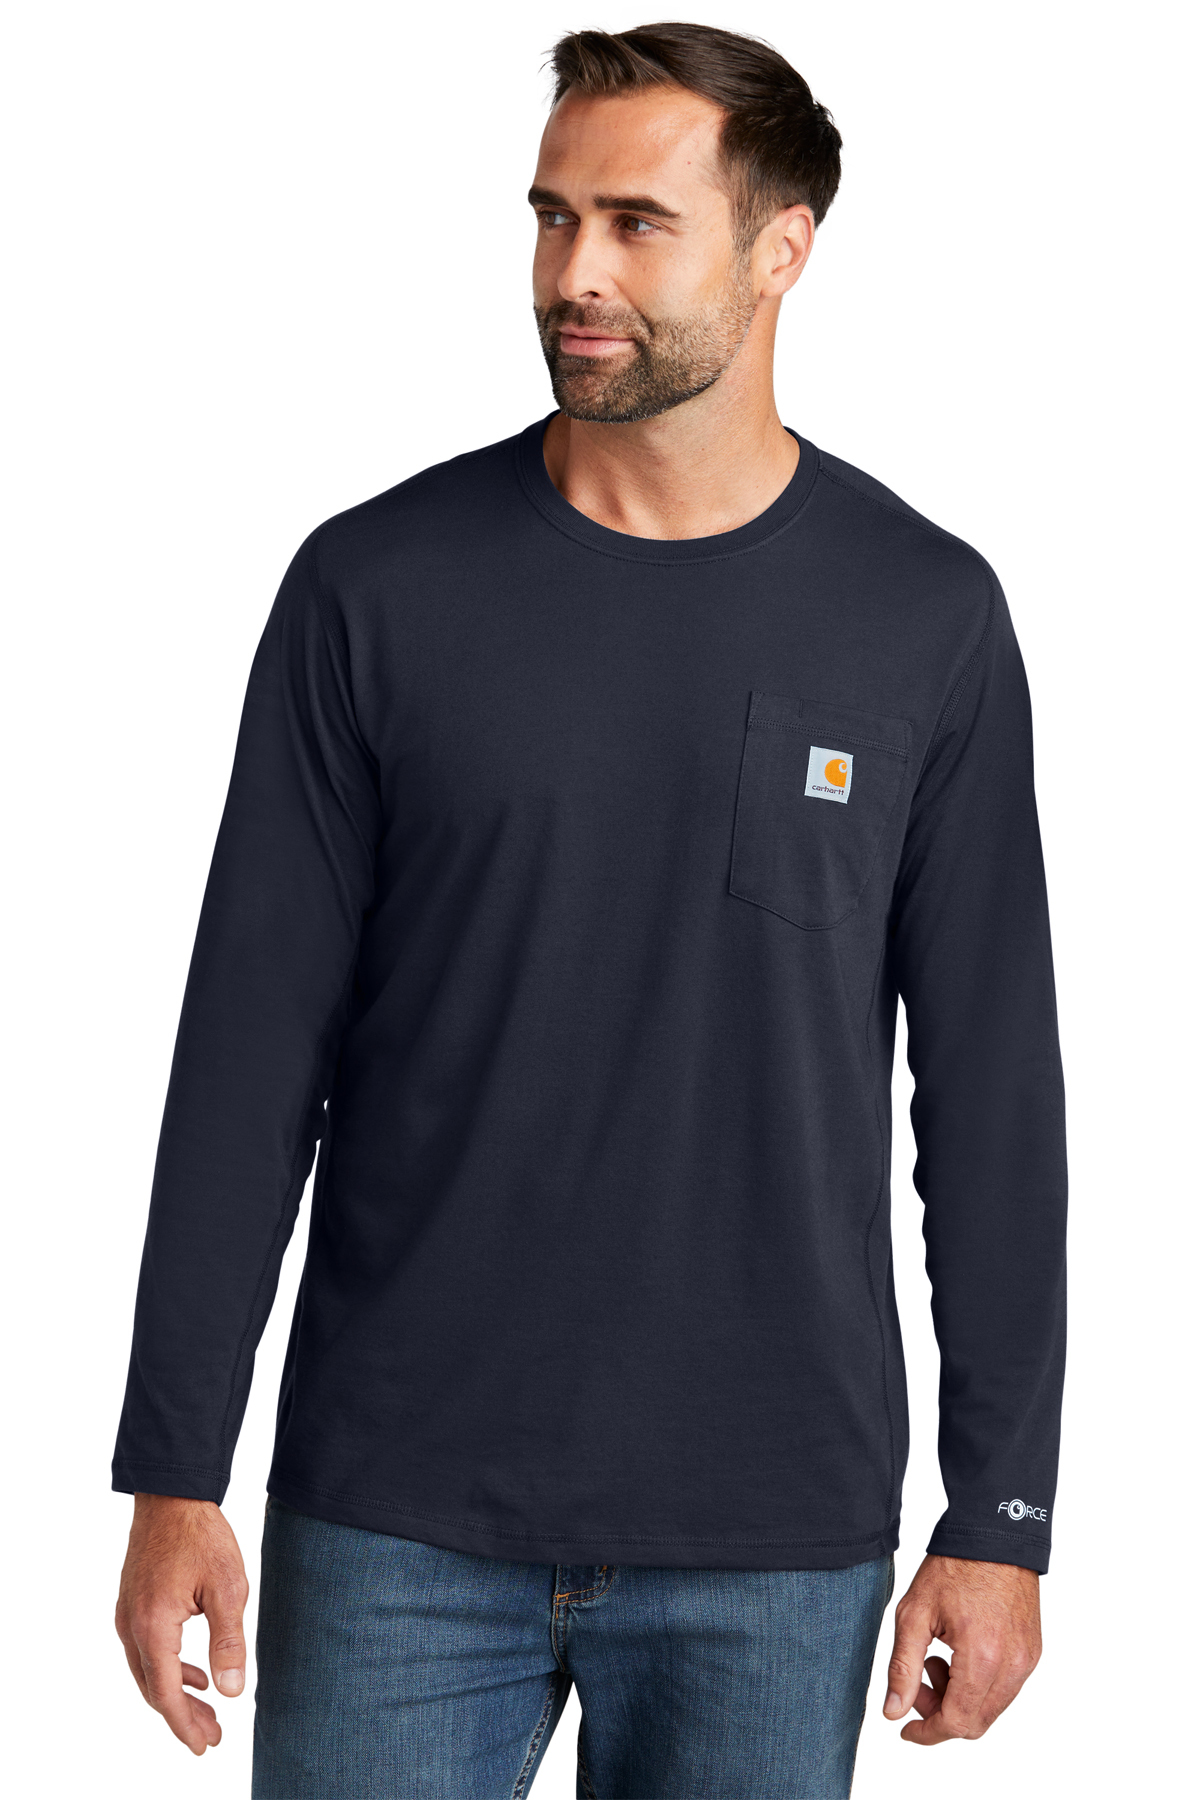 Carhartt Force Longsleeve Pocket T-Shirt Herren Langarm Shirt